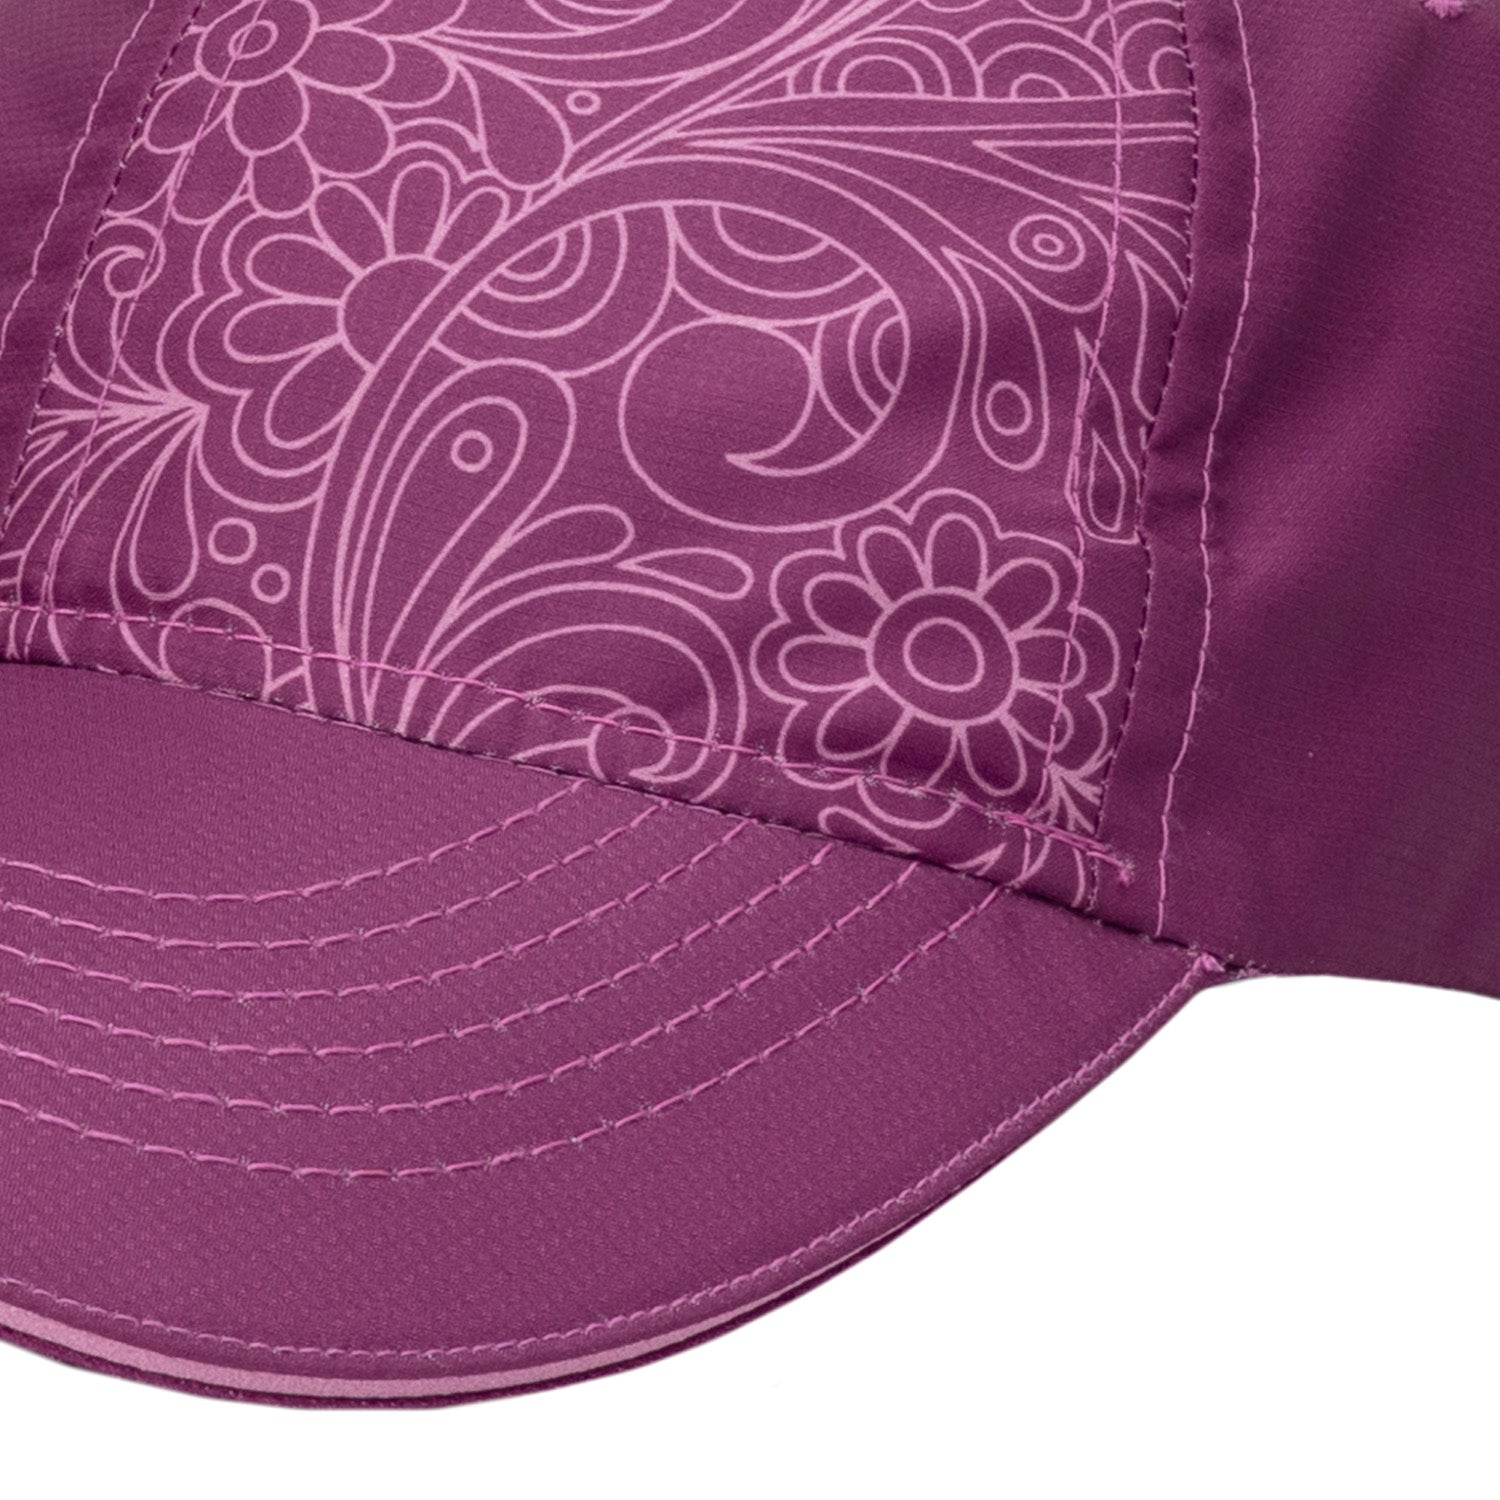 Flower print surf straw hat - Cabana Hat Herman Headwear : Headict